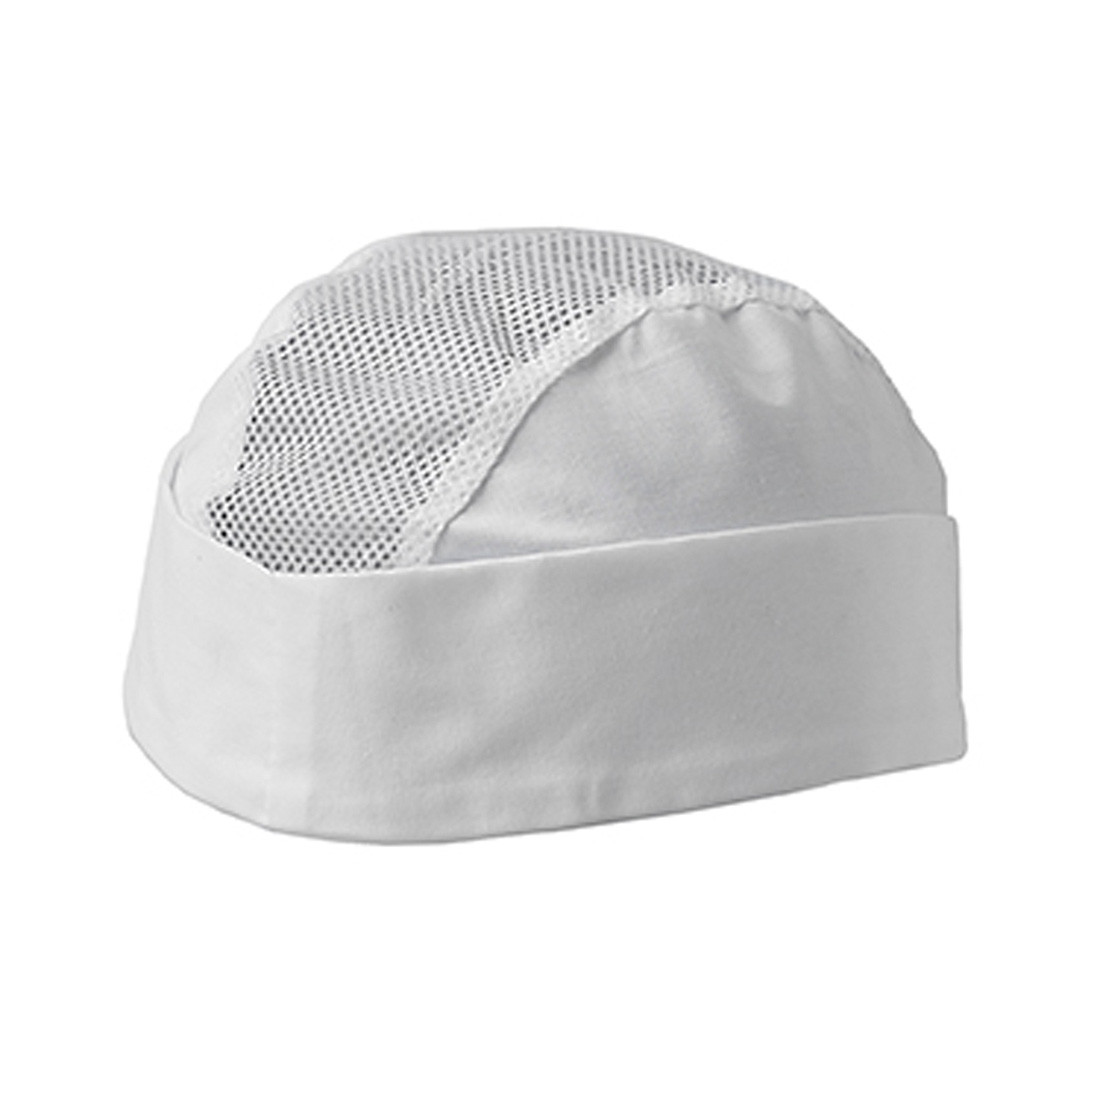 TOM Net Chef's Hat - Safetywear